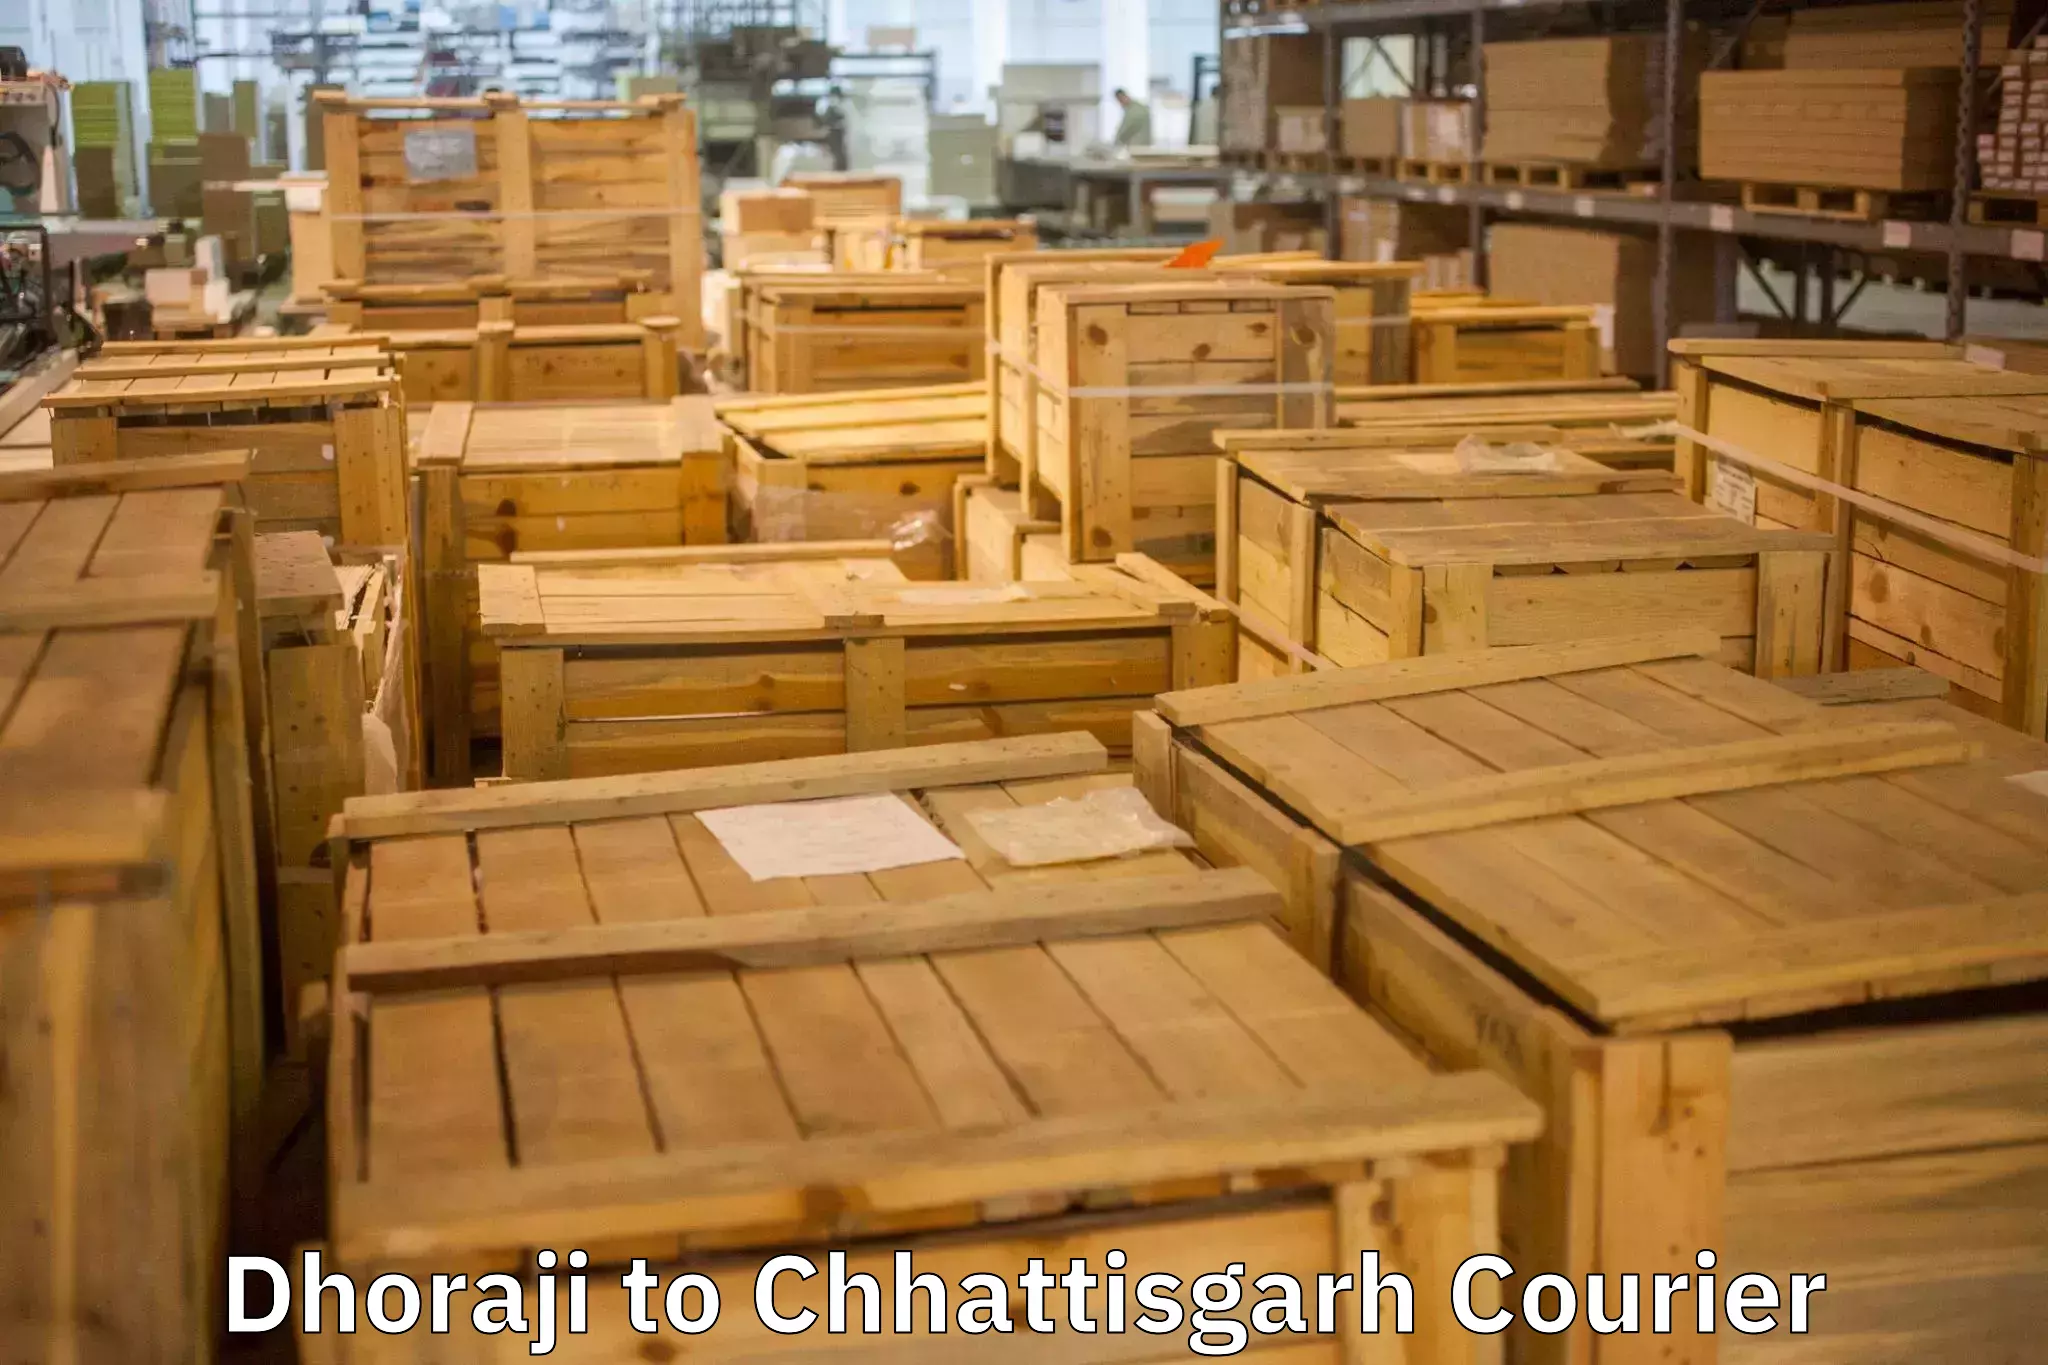 Full-service furniture transport Dhoraji to Pithora